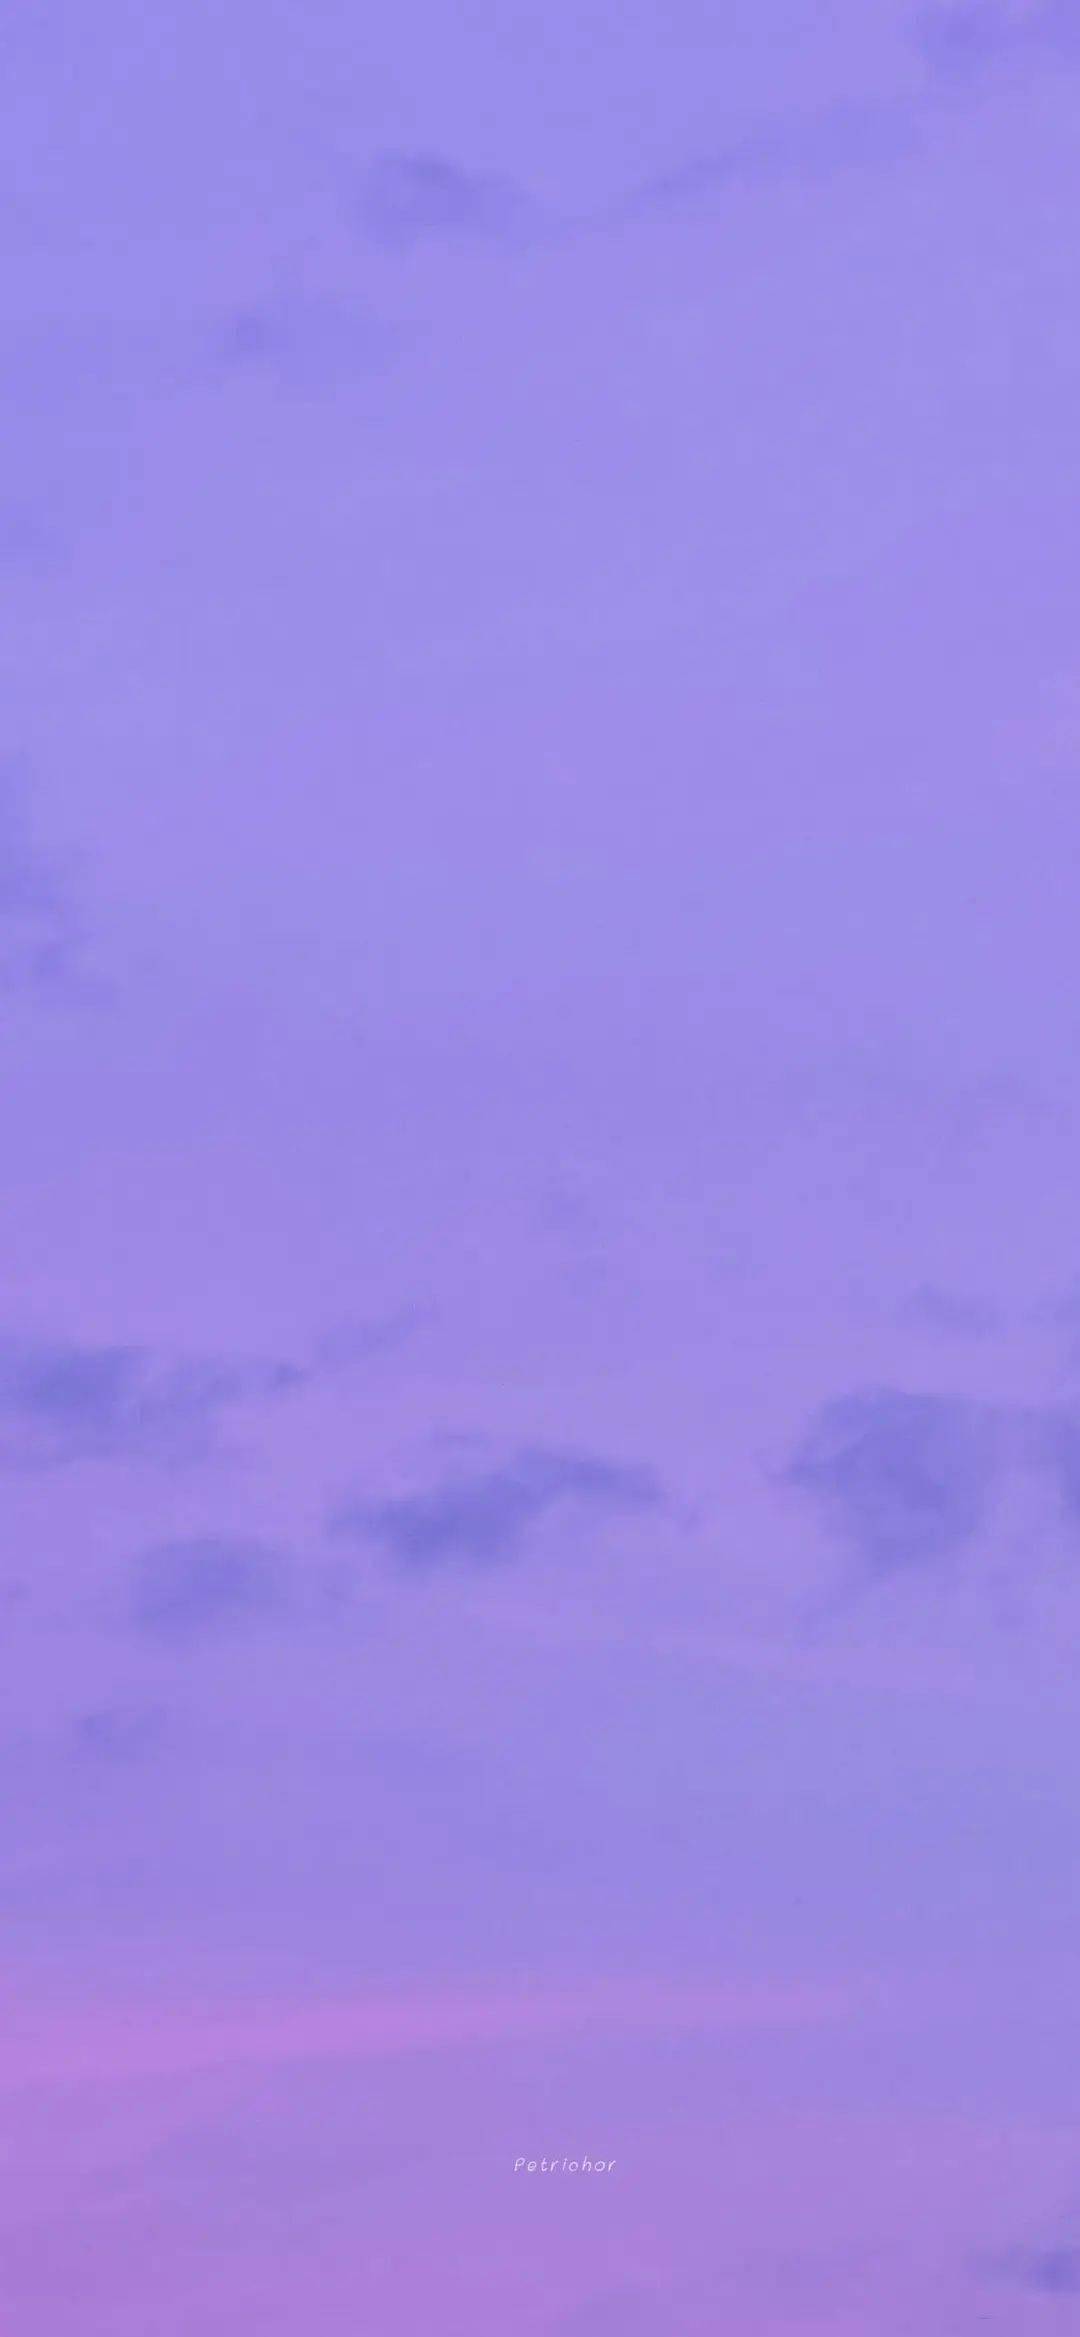 紫色滤镜的微信/qq聊天背景壁纸,给浪漫的你